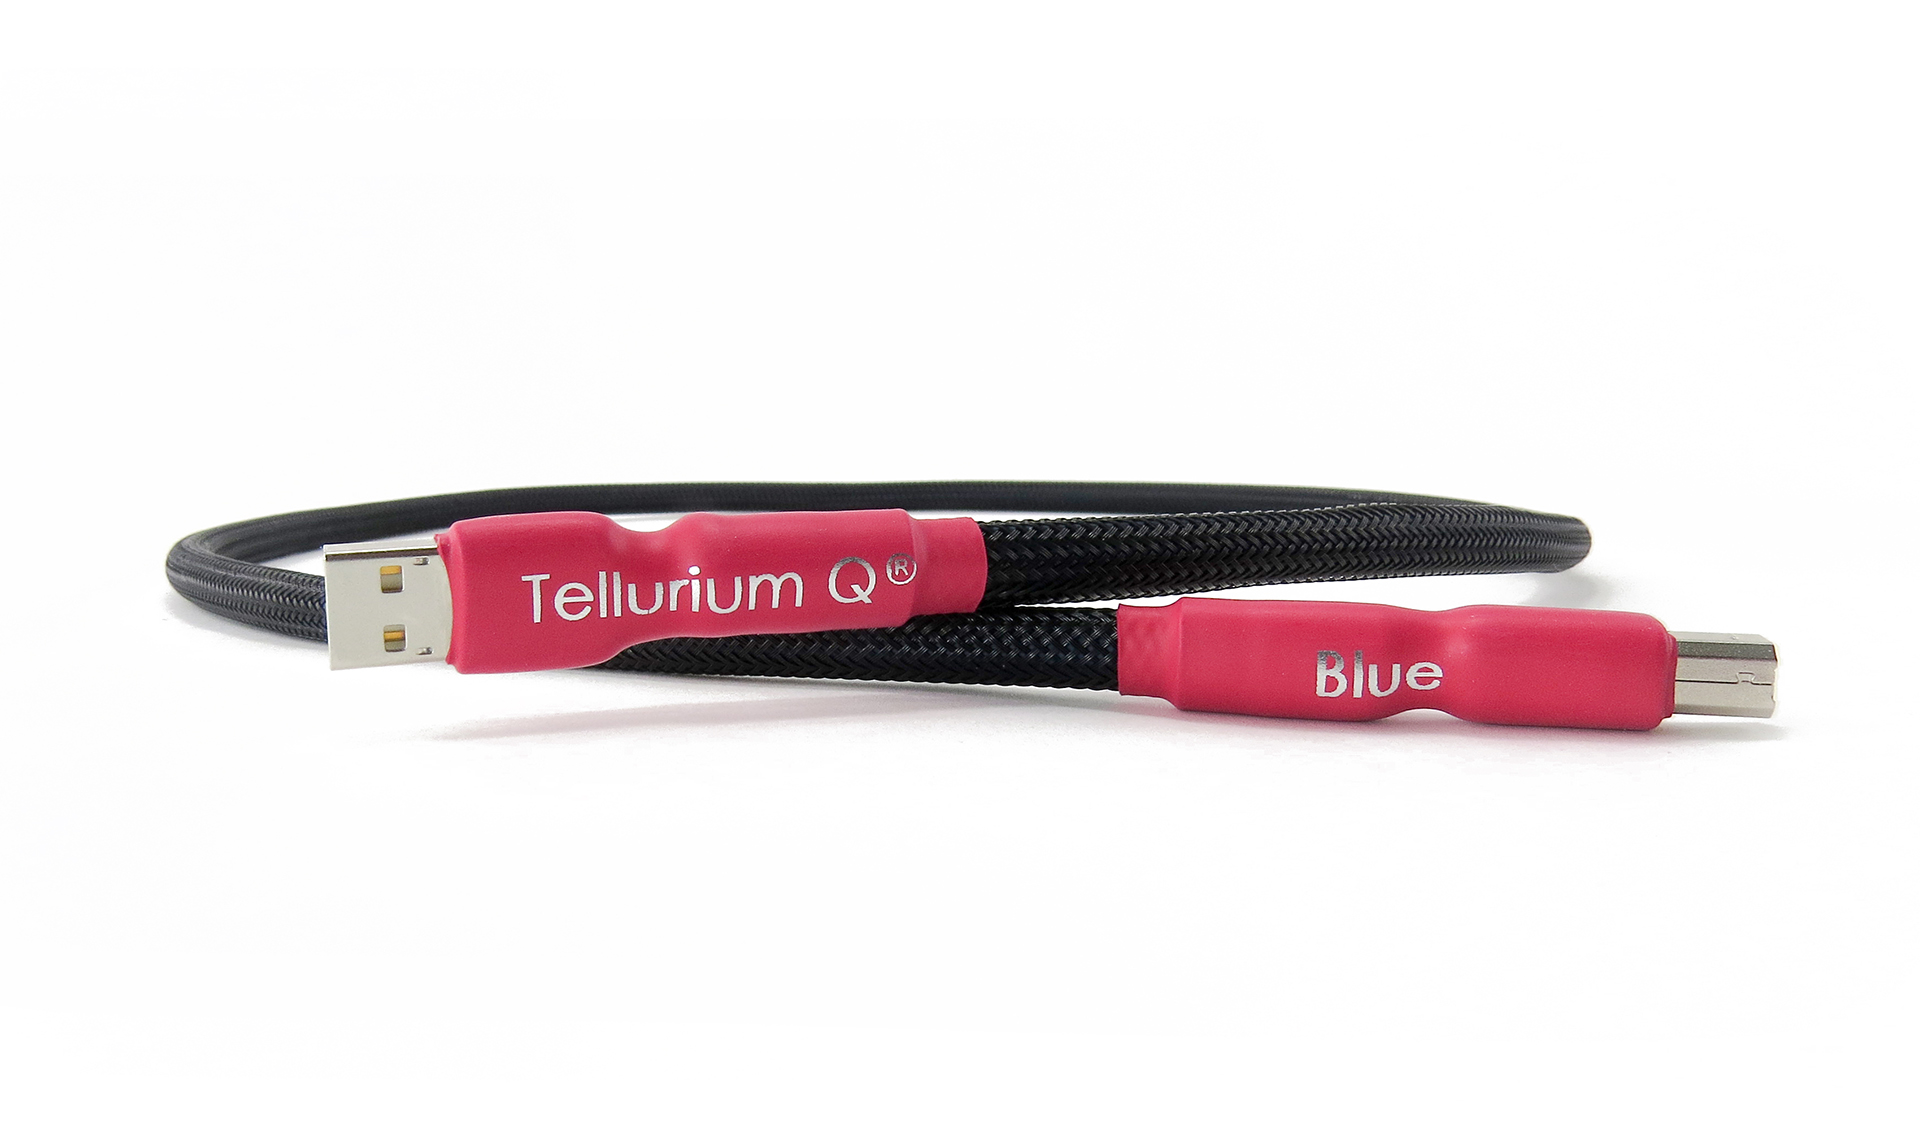 Tellurium Q | Blue | USB Kabel